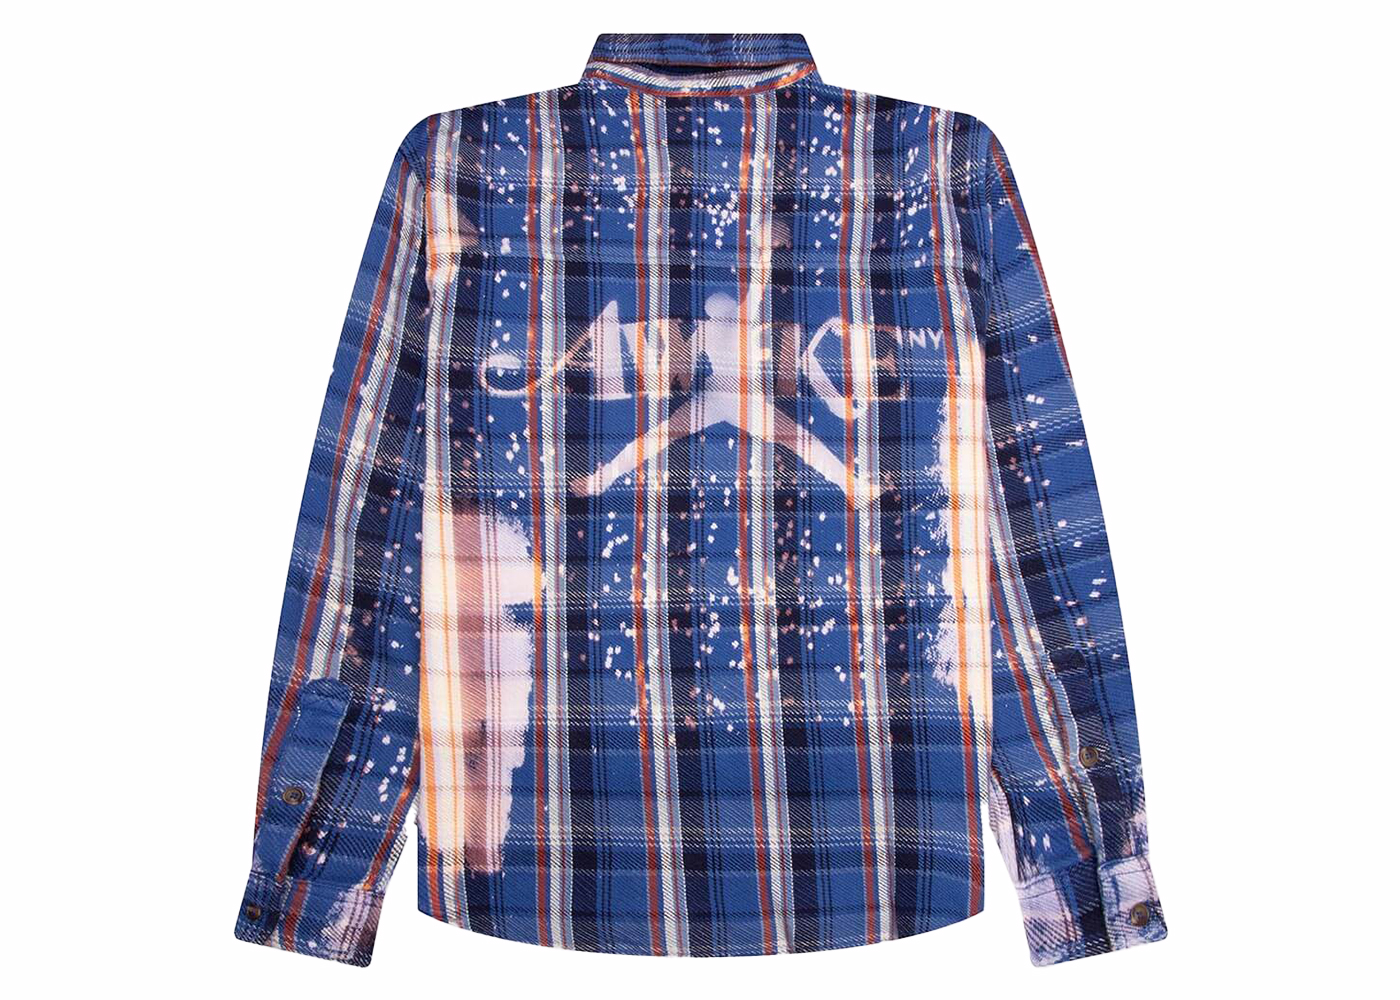 購入を考えているのですがNike JORDAN x Awake NY Flannel Shirt